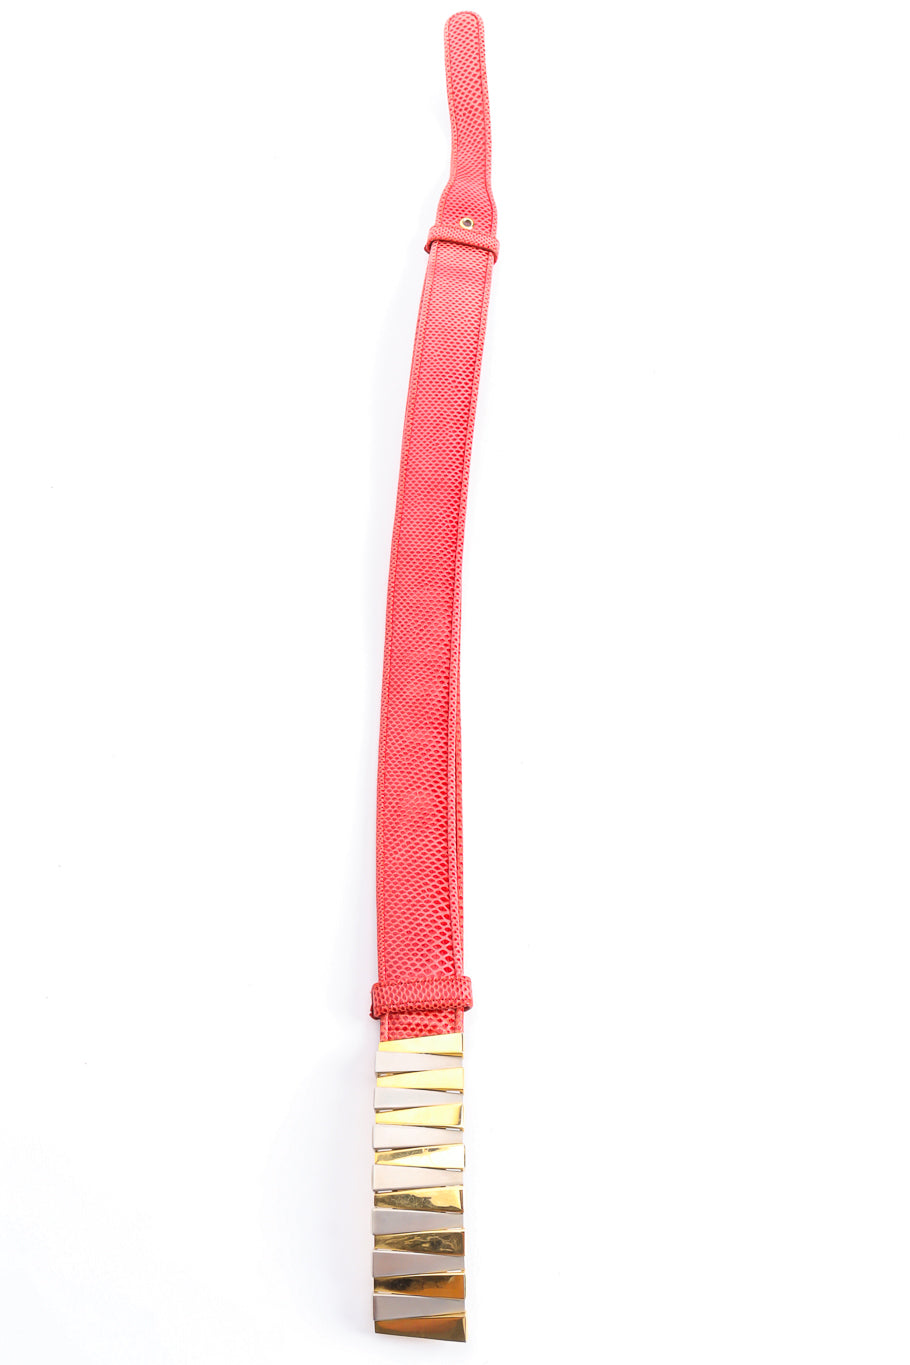 zig zag buckle slide belt by Judith Leiber vertical @recessla